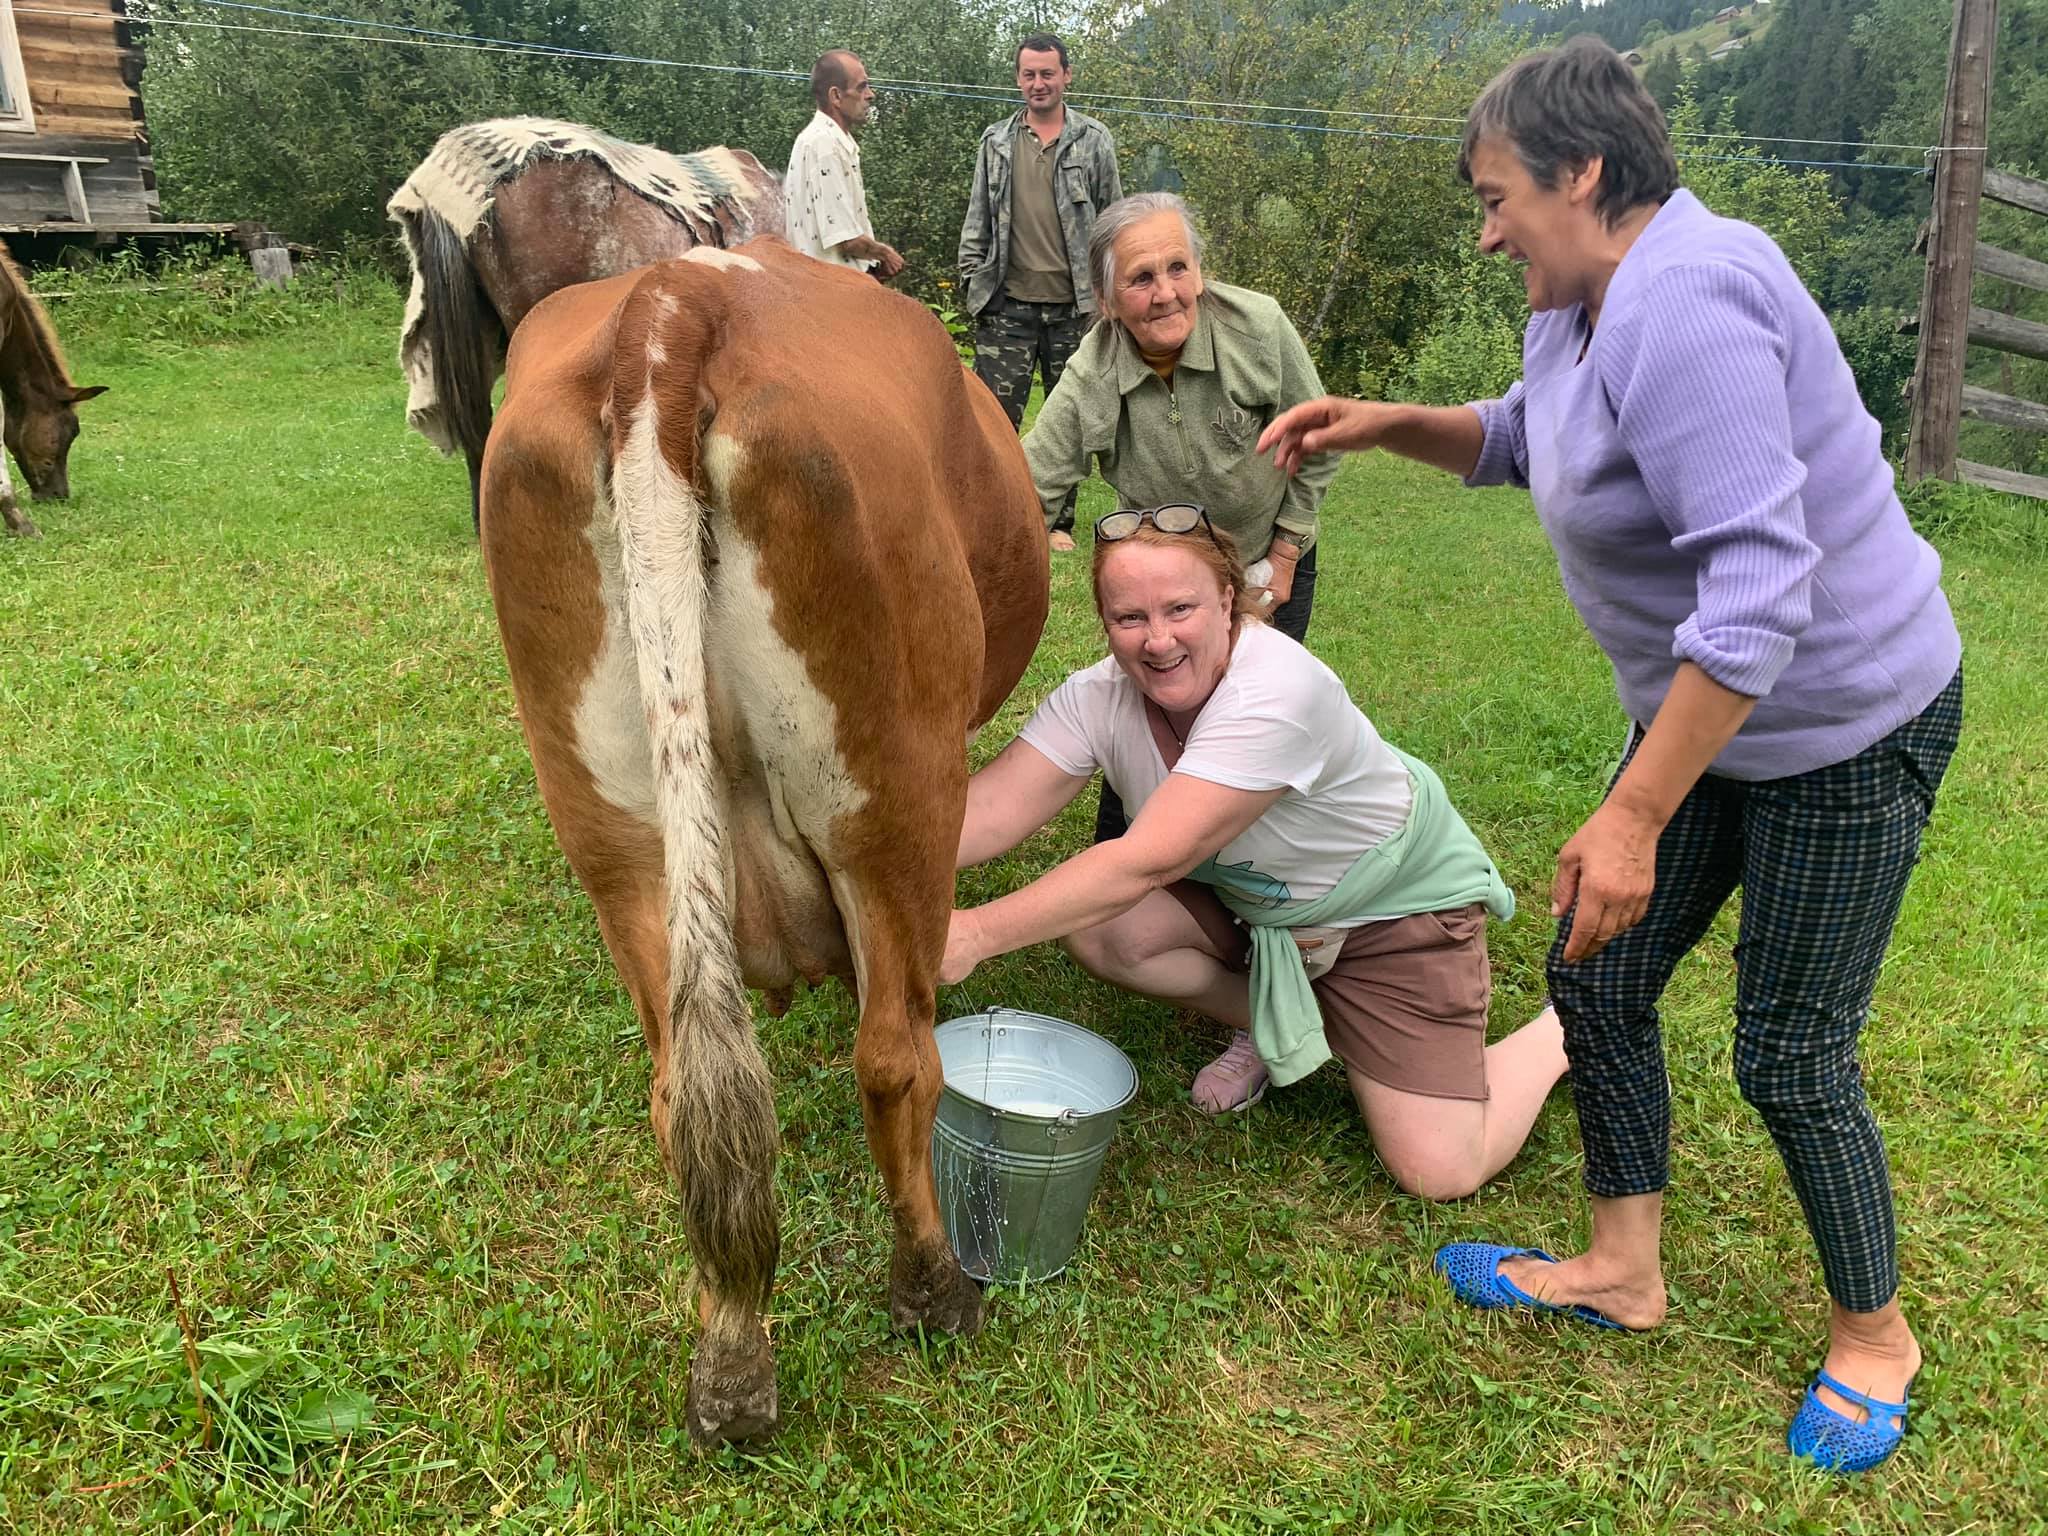 Уперше в житті Олені Хохлаткіній довелося доїти корову. І це був неабиякий досвід. Фото: Facebook.com/Олена Хохлаткіна